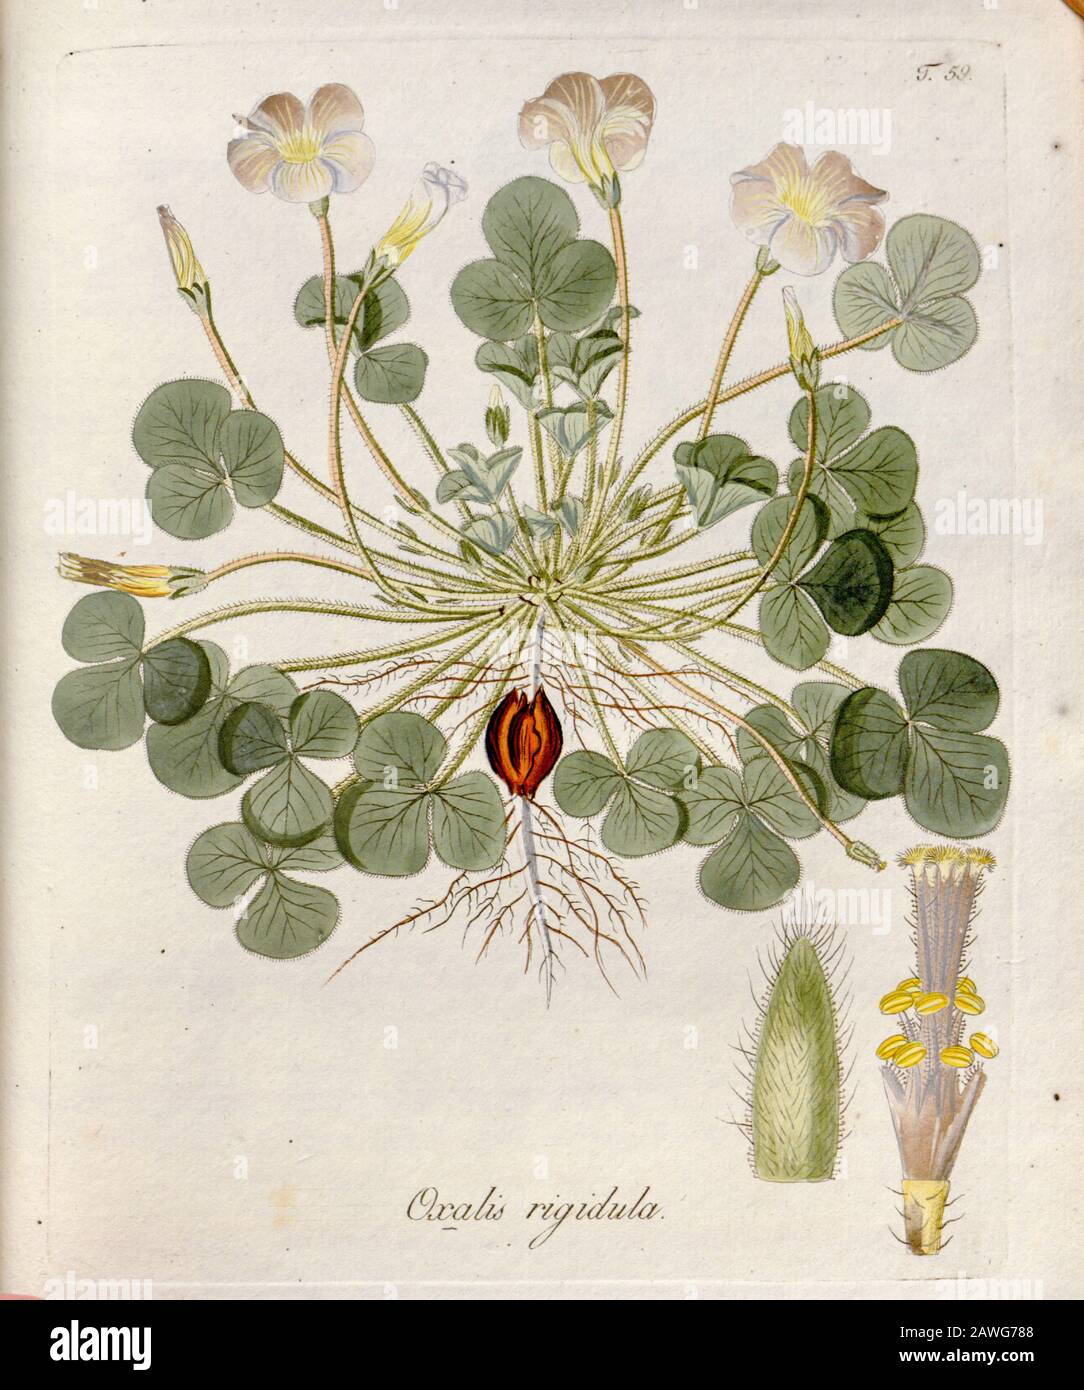 Woodsorrel (Oxalis rigidula). Illustrazione di 'Oxalis Monographia iconibus illustrata' di Nikolaus Joseph Jacquin (1797-1798). Pubblicato nel 1794 Foto Stock